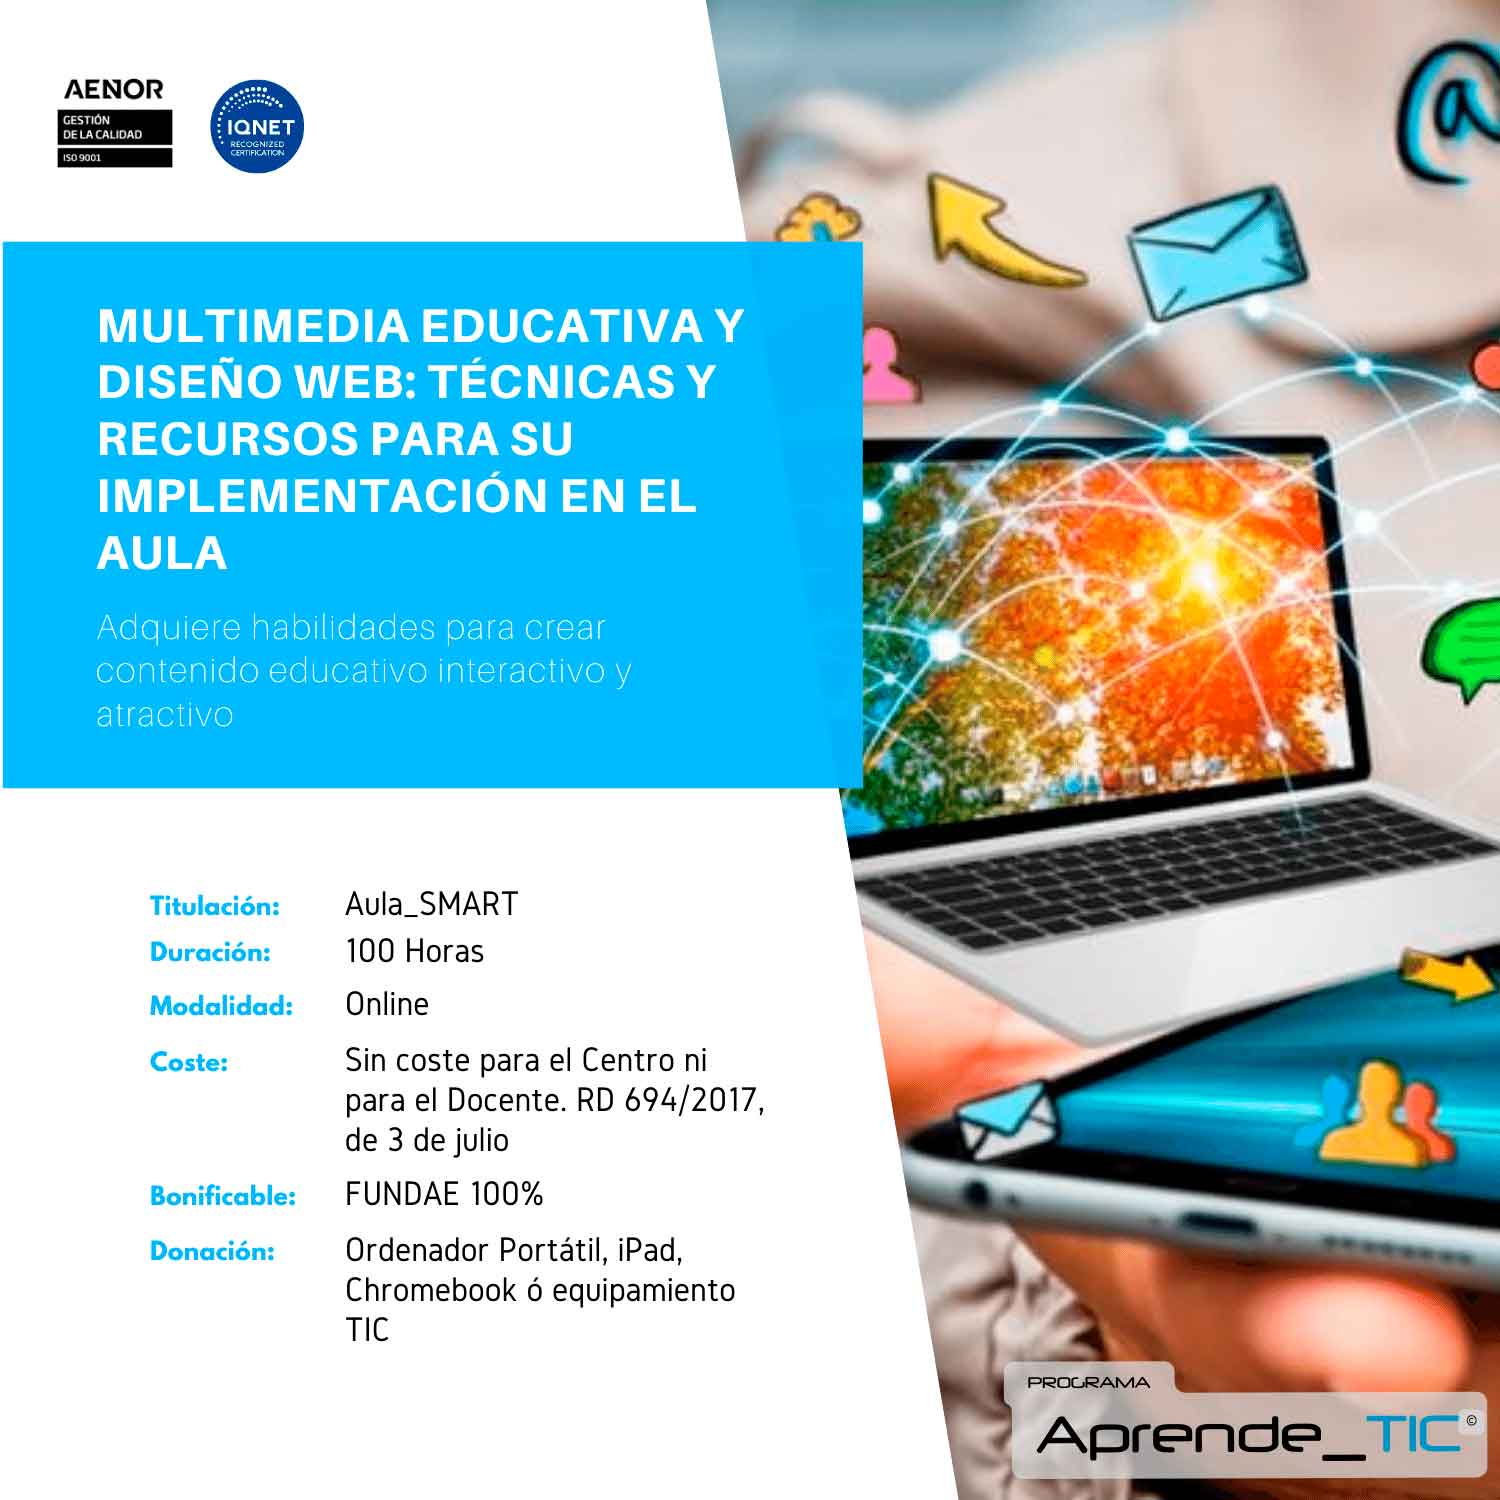 Multimedia educativa y Diseño web: técnicas y recursos para su implementación en el aula